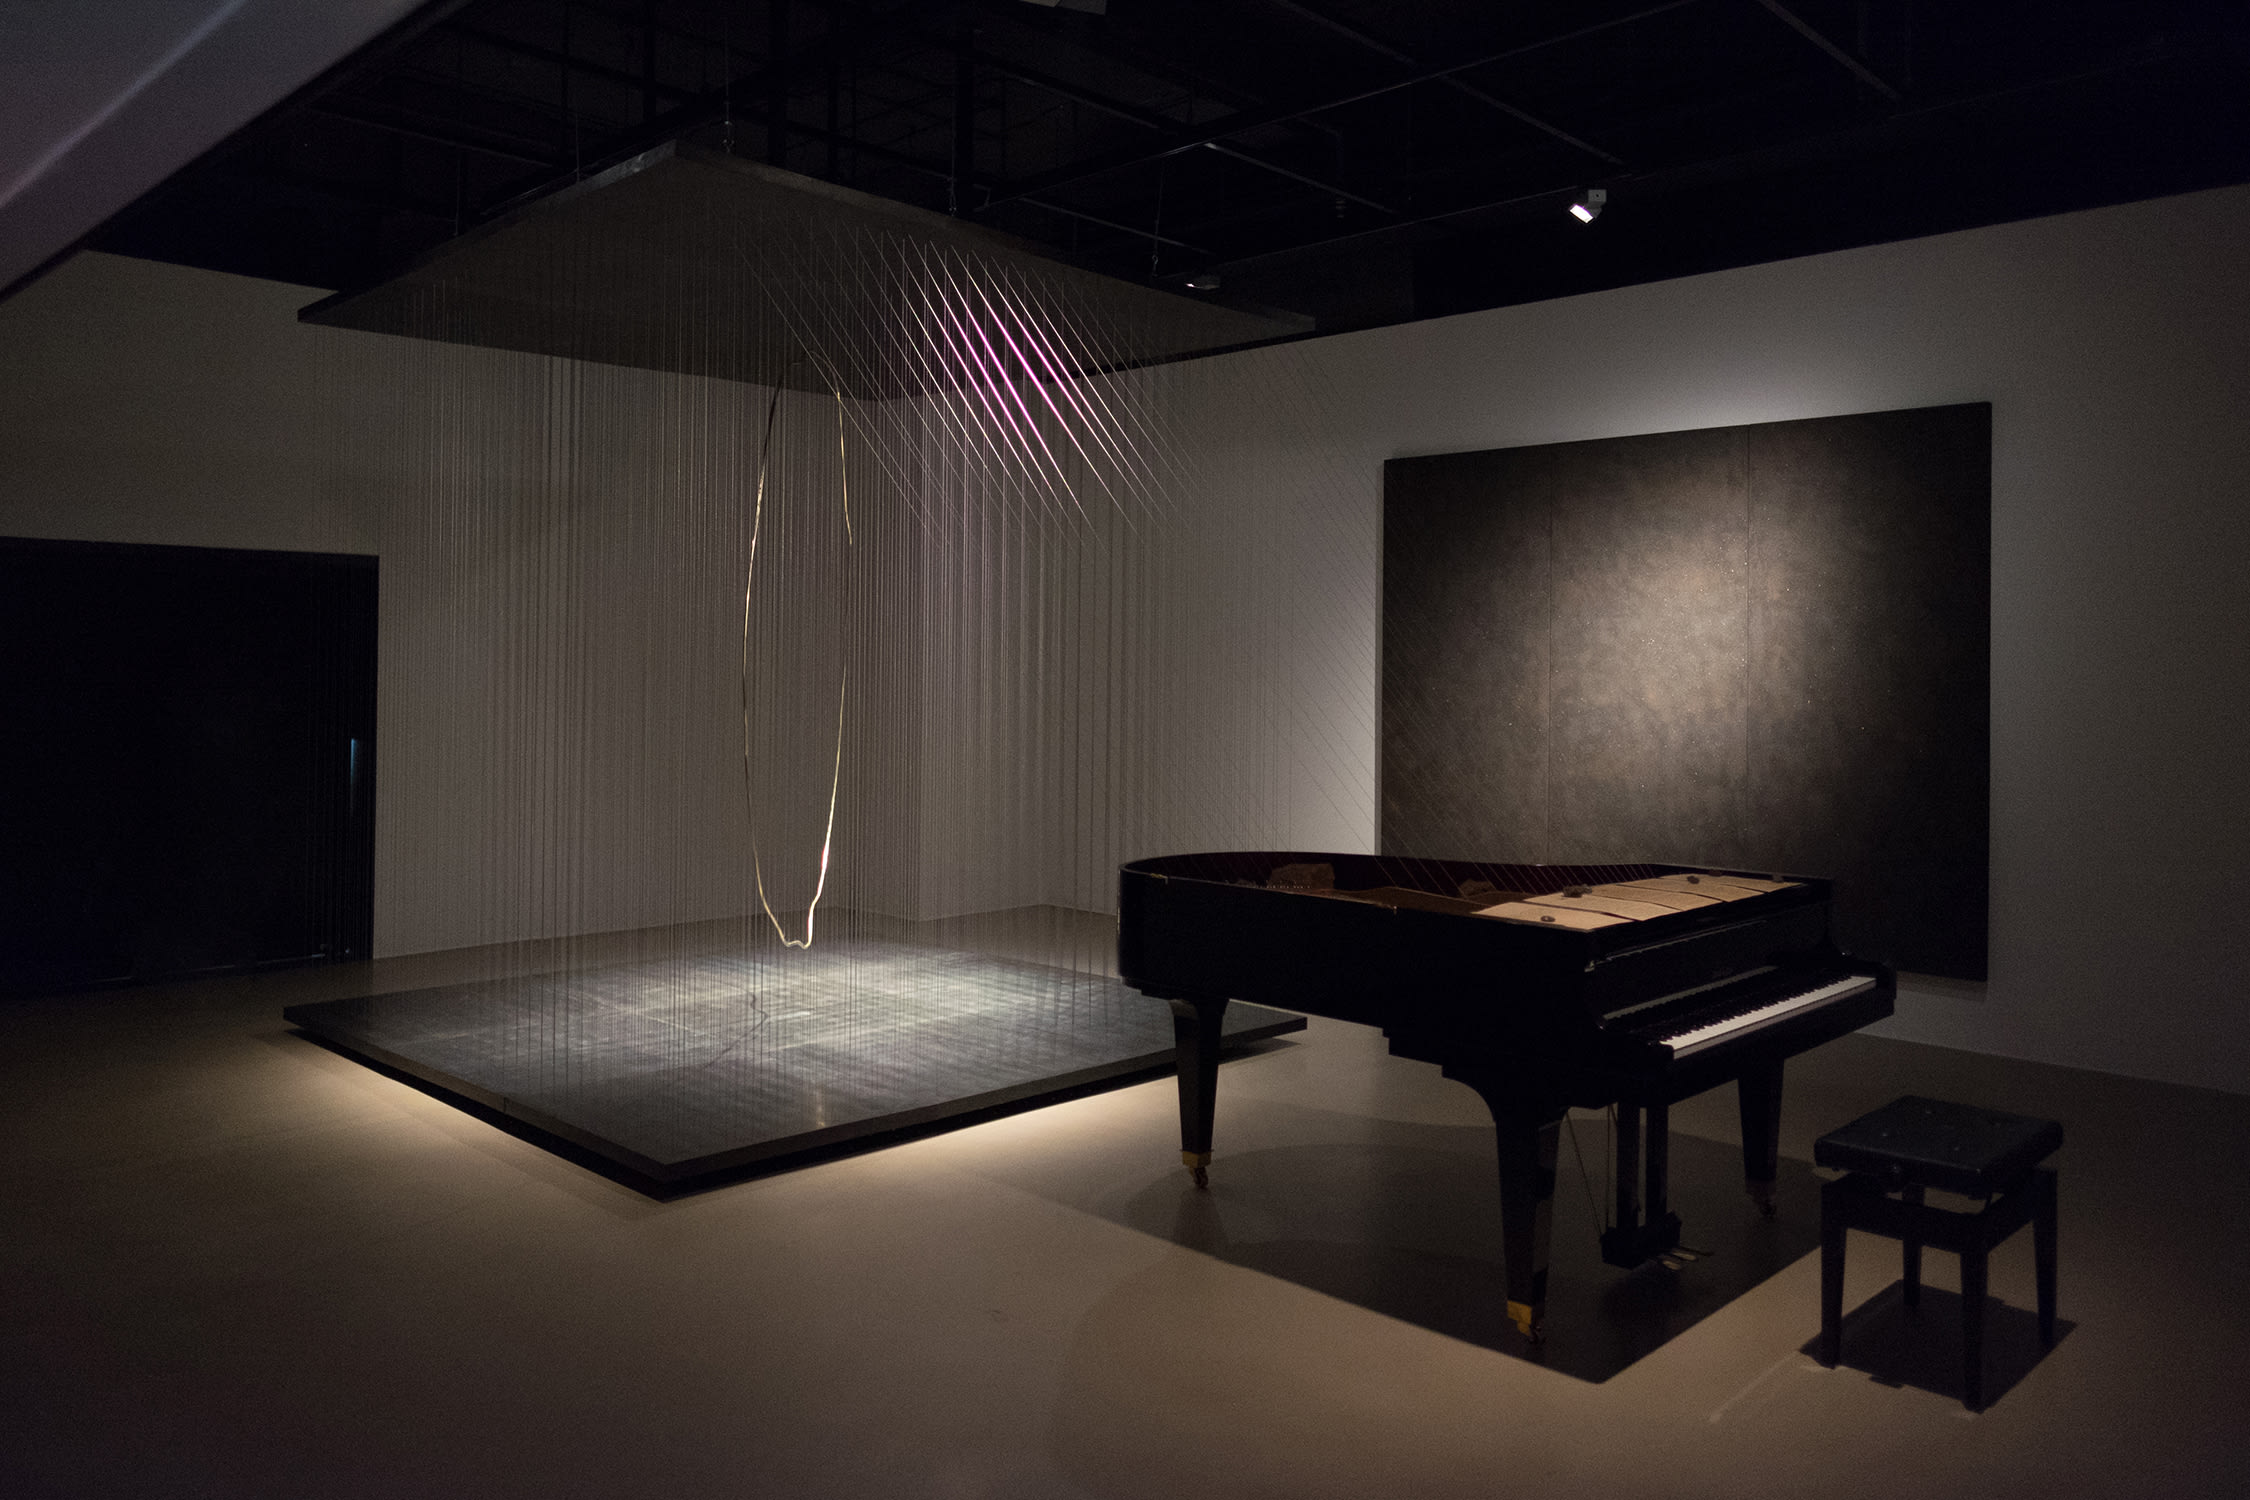 Installation view of Arin Rungjang's exhibition 'Oblivion', Nova Contemporary, 2021–22. Courtesy of Nova Contemporary, Bangkok.